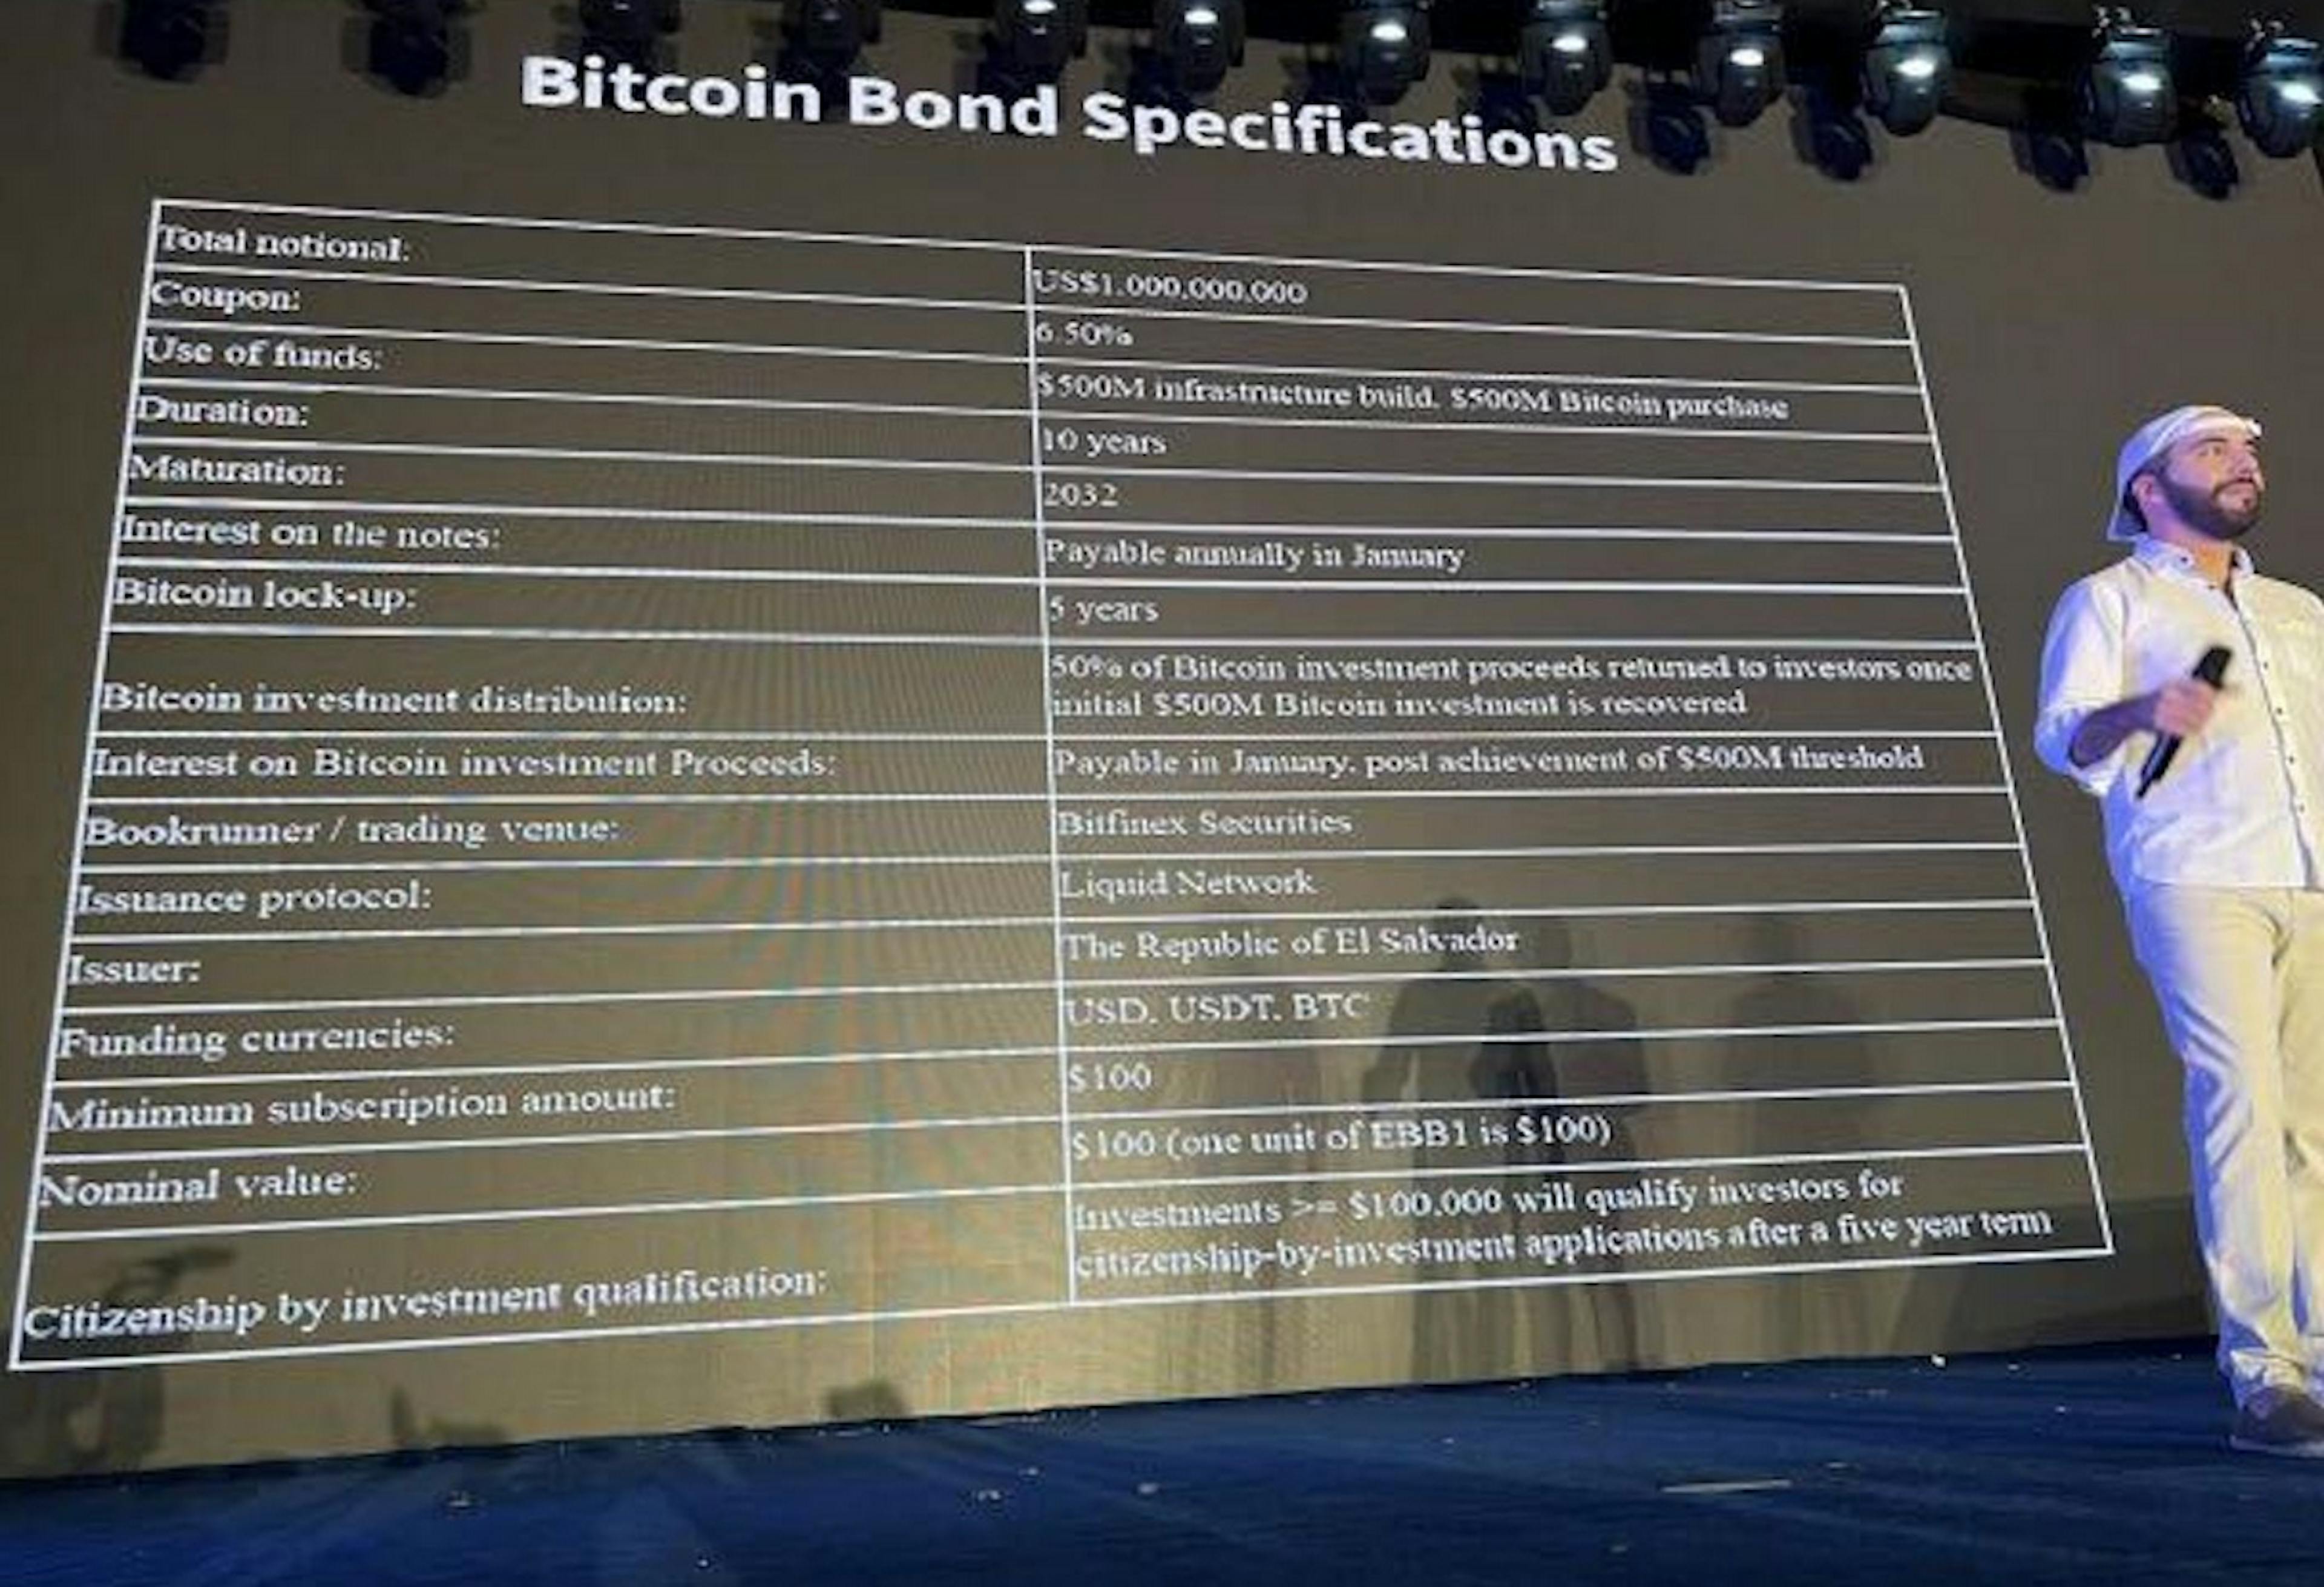 Fonte da imagem: https://www.coindesk.com/markets/2021/11/22/junk-rated-el-salvadors-bitcoin-bonds-look-explosive-think-volcano/